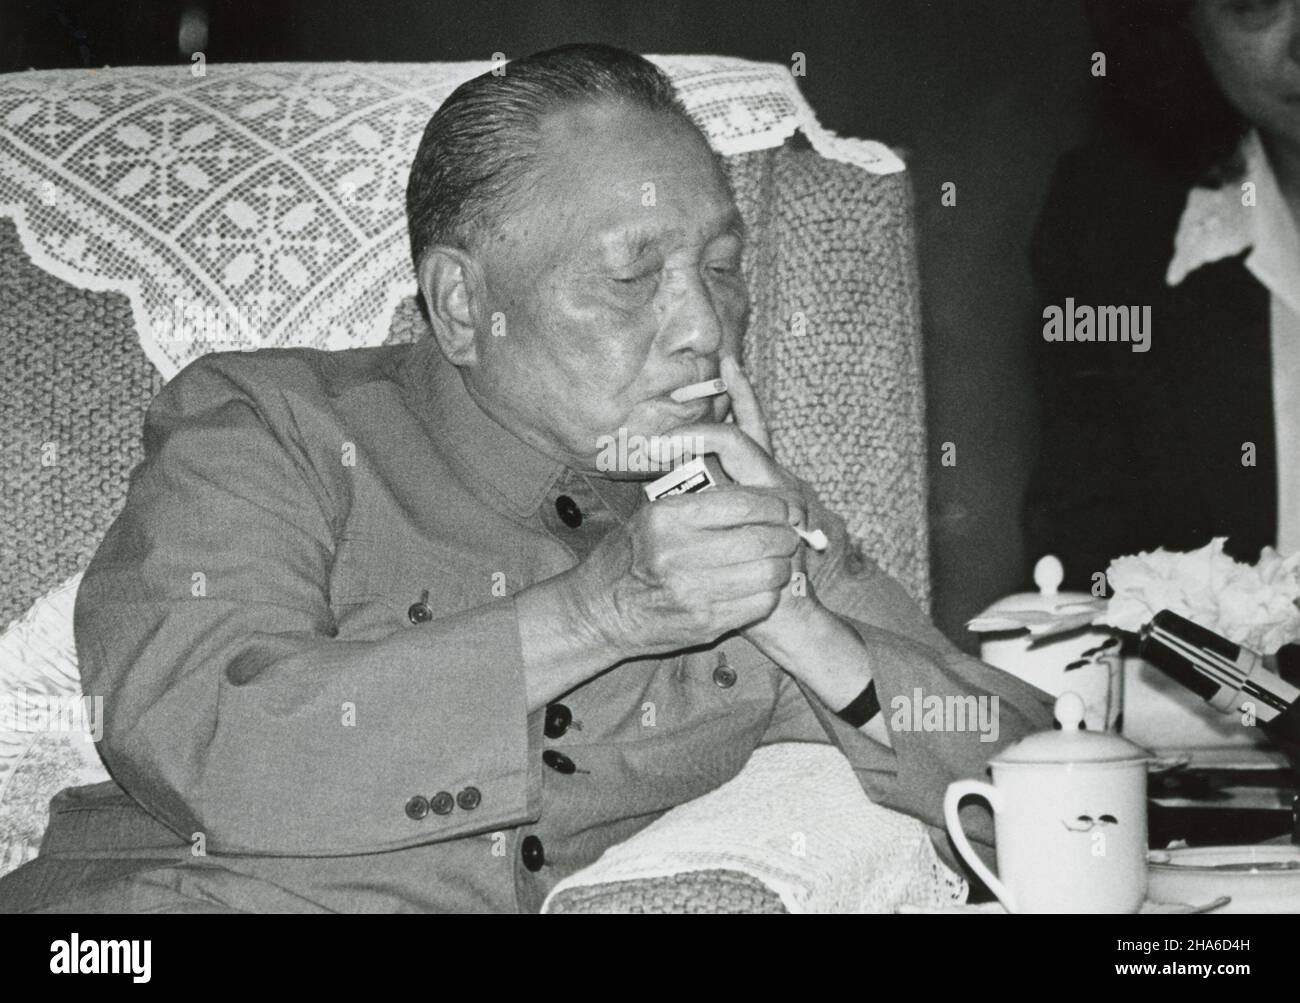 L'ex leader cinese Deng Xiaoping illumina una sigaretta a marchio Panda nella Grande Sala del Popolo nel settembre del 1988. All'epoca aveva 84 anni. Foto Stock